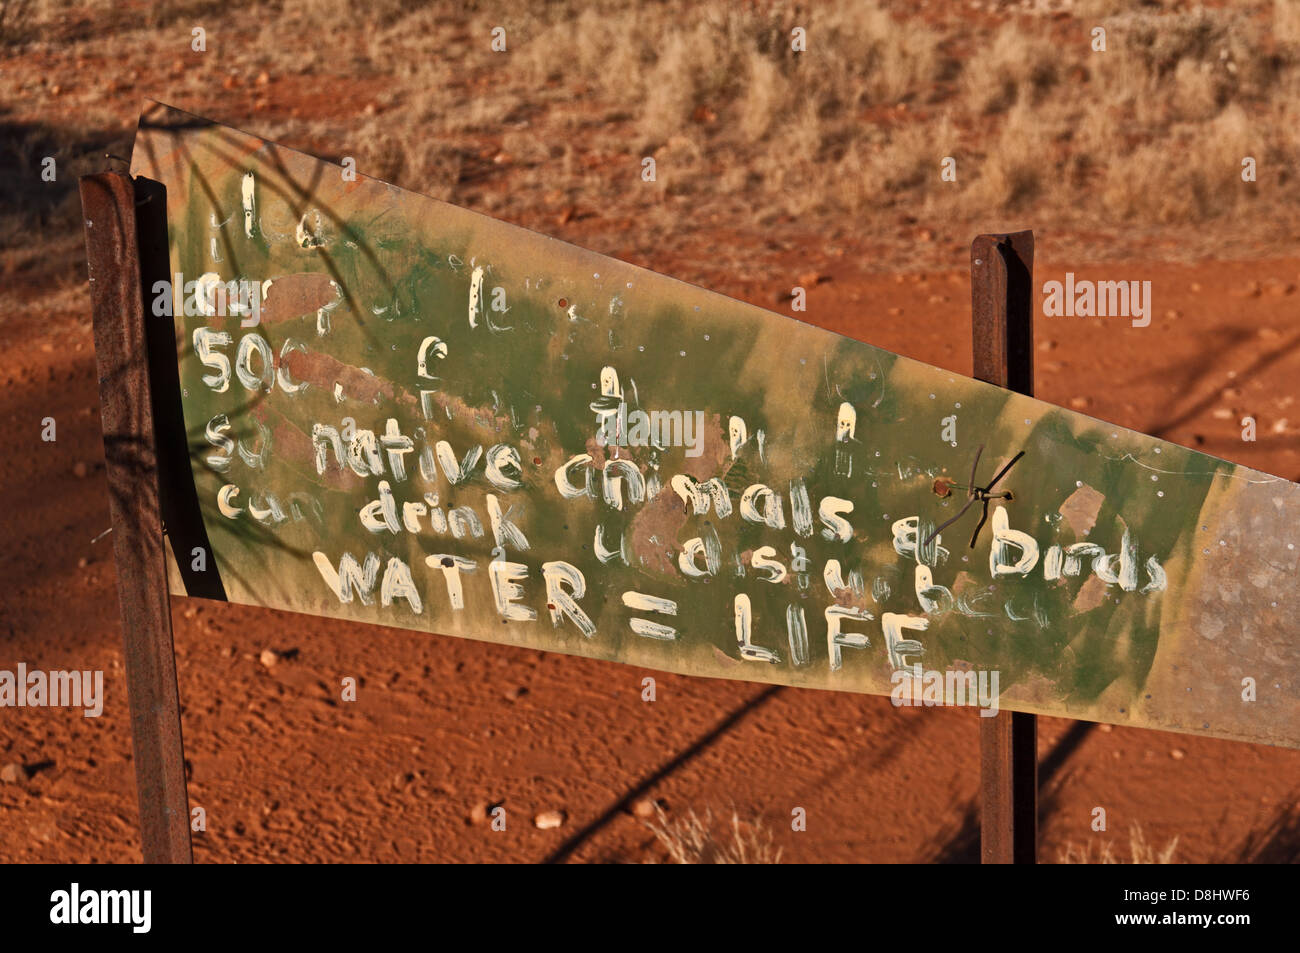 WINDICH SPRINGS, l'eau N° 4a, CANNING STOCK ROUTE, grand désert de sable, de l'Australie-Occidentale, Australie Banque D'Images